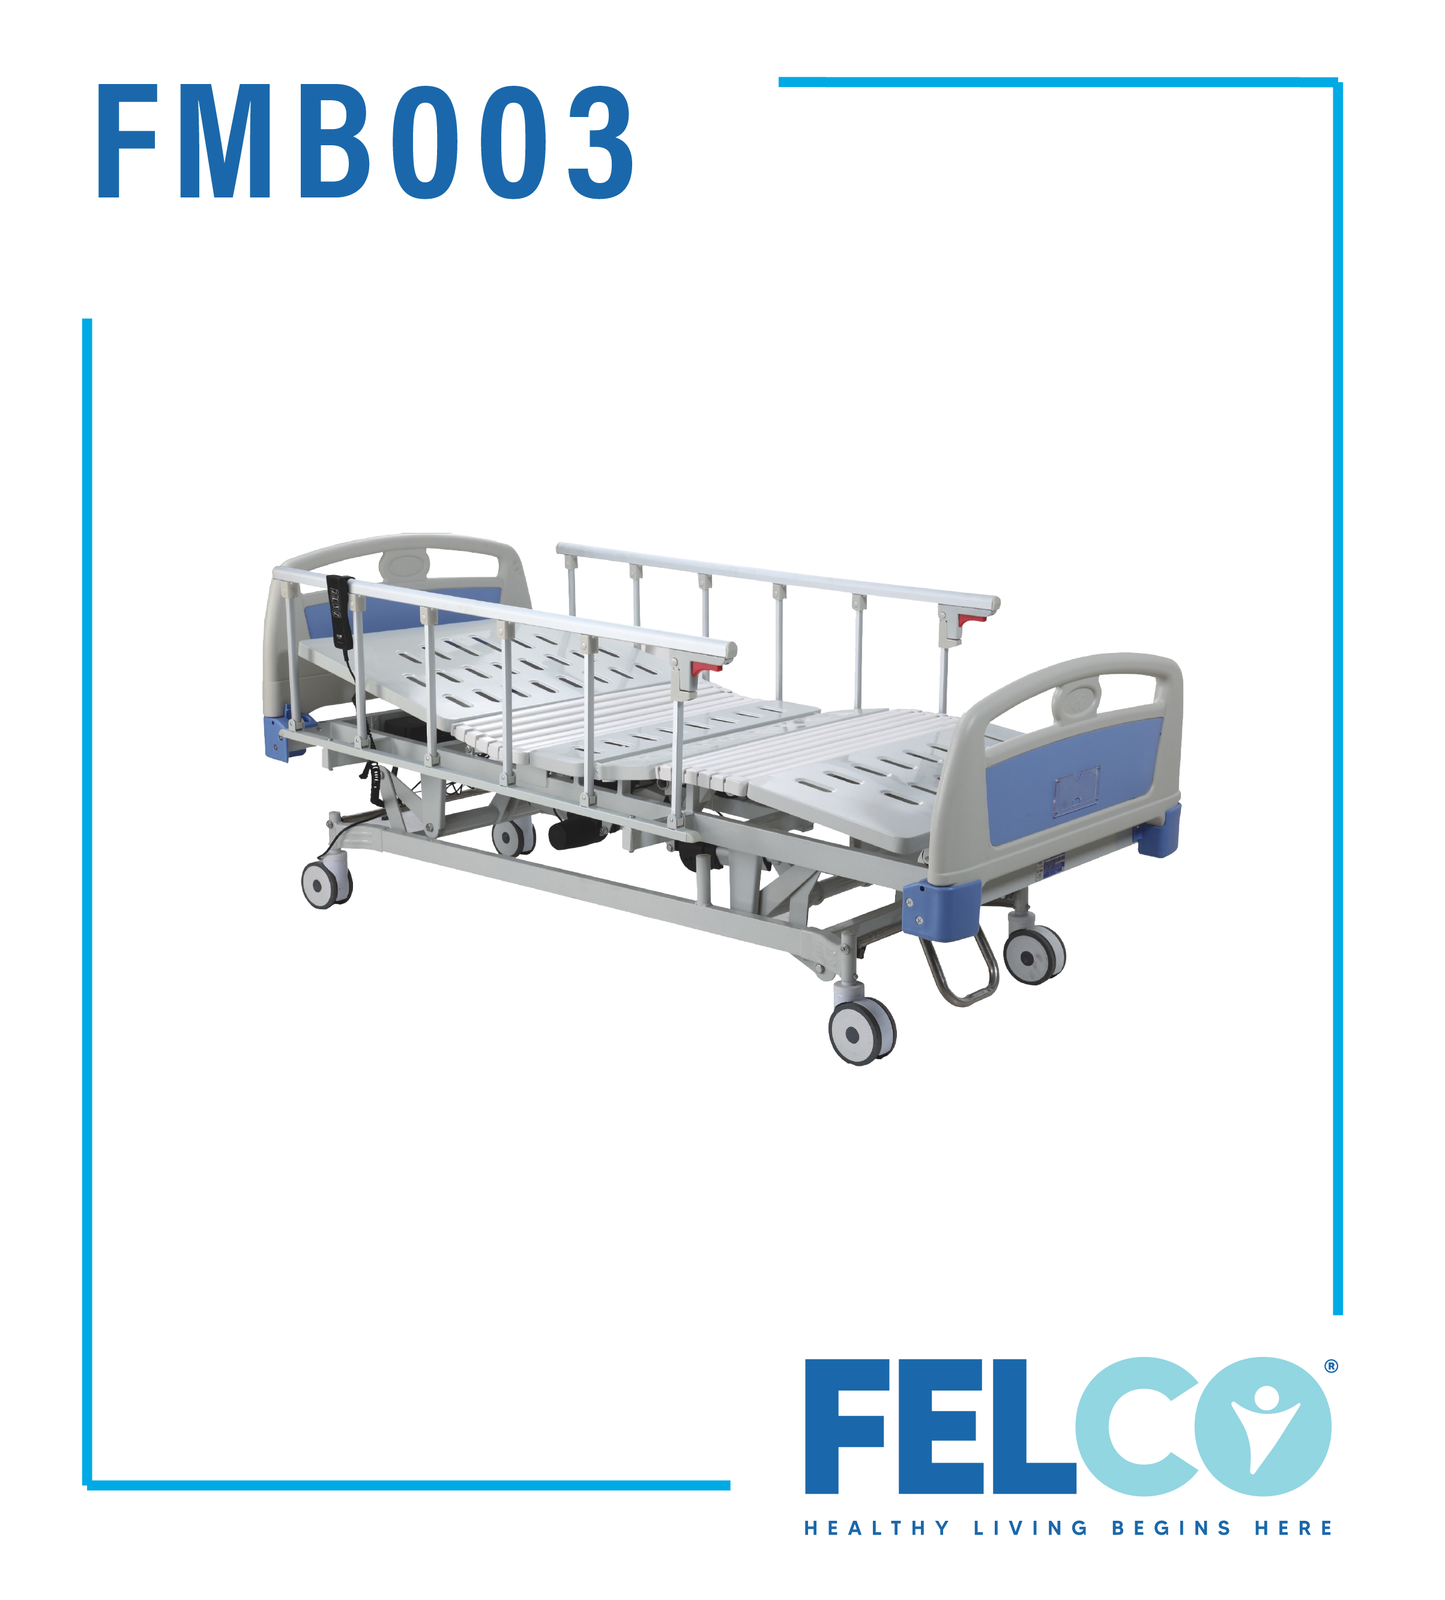 FMB003 Hospital Hi Lo Bed- Double Fowler (Manual)